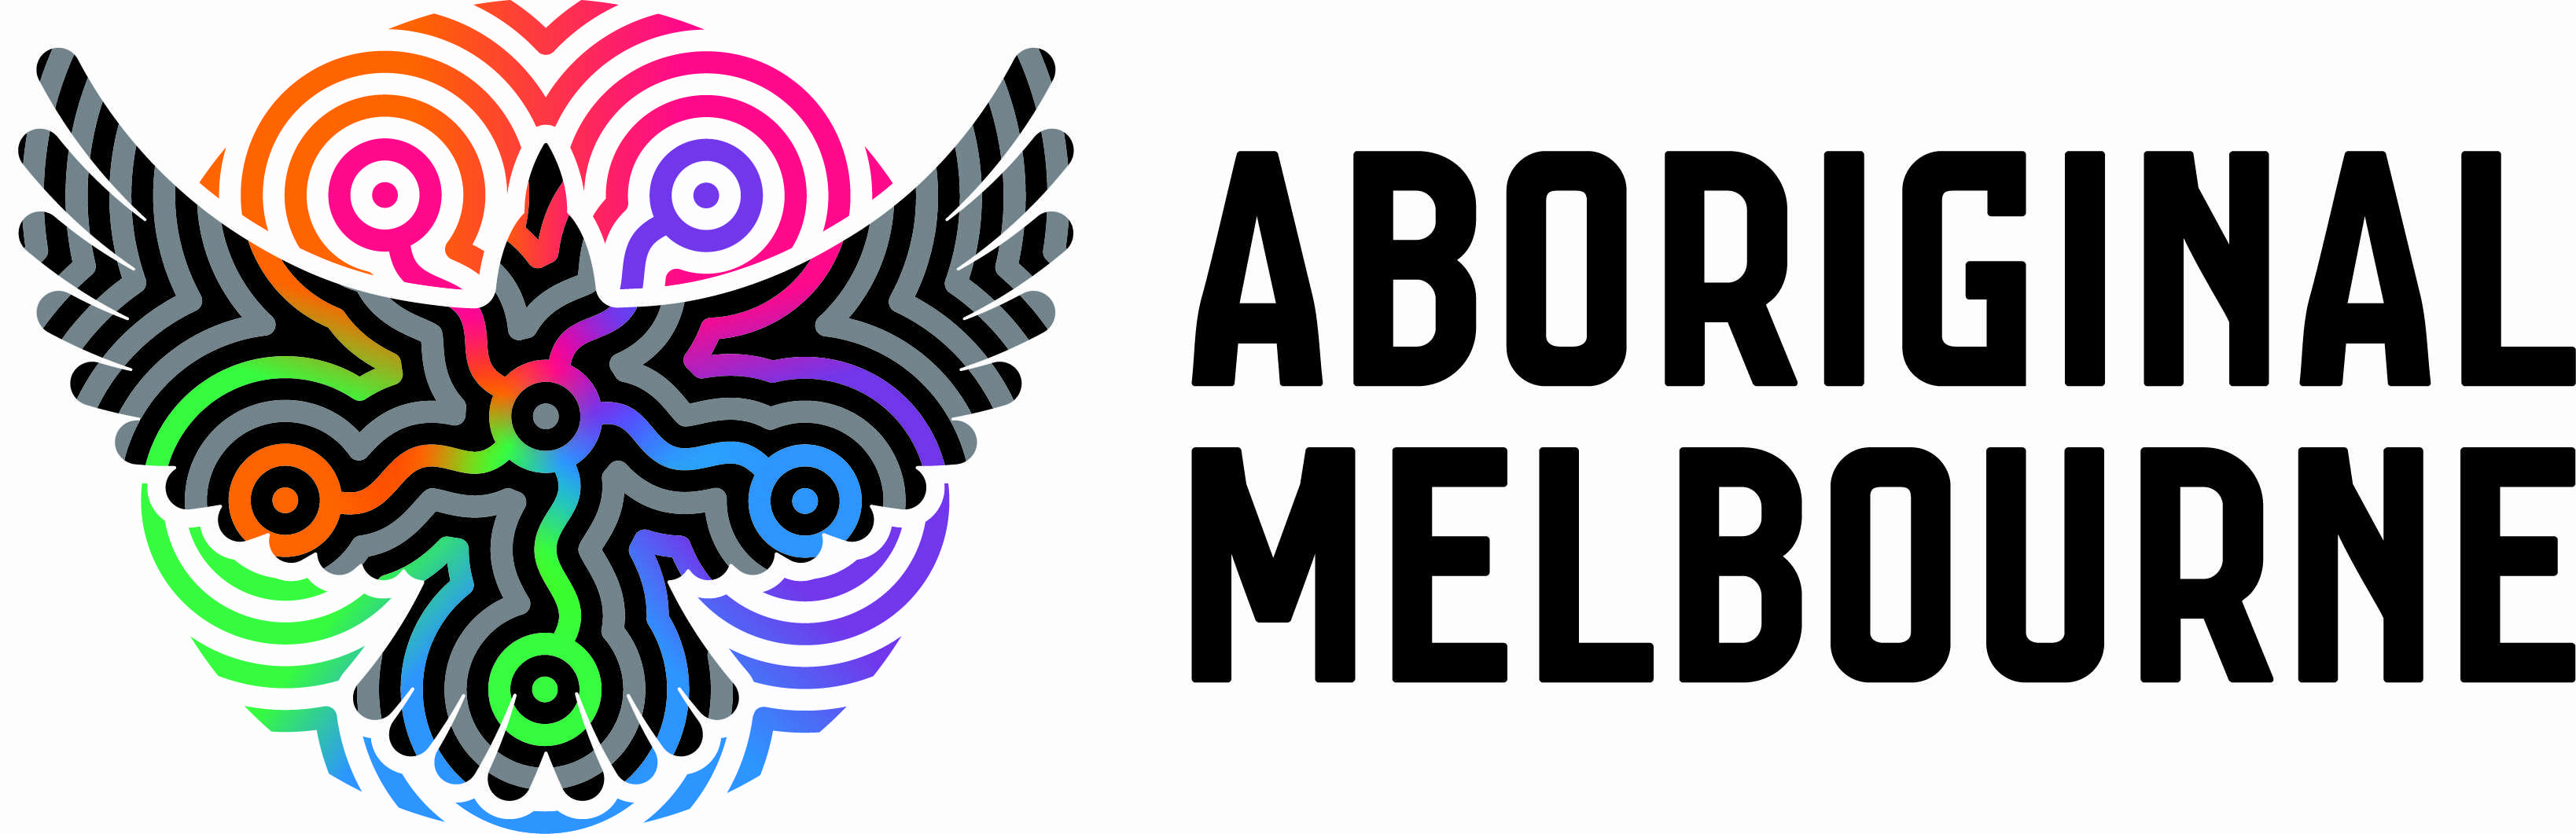 Aboriginal Melbourne Logo